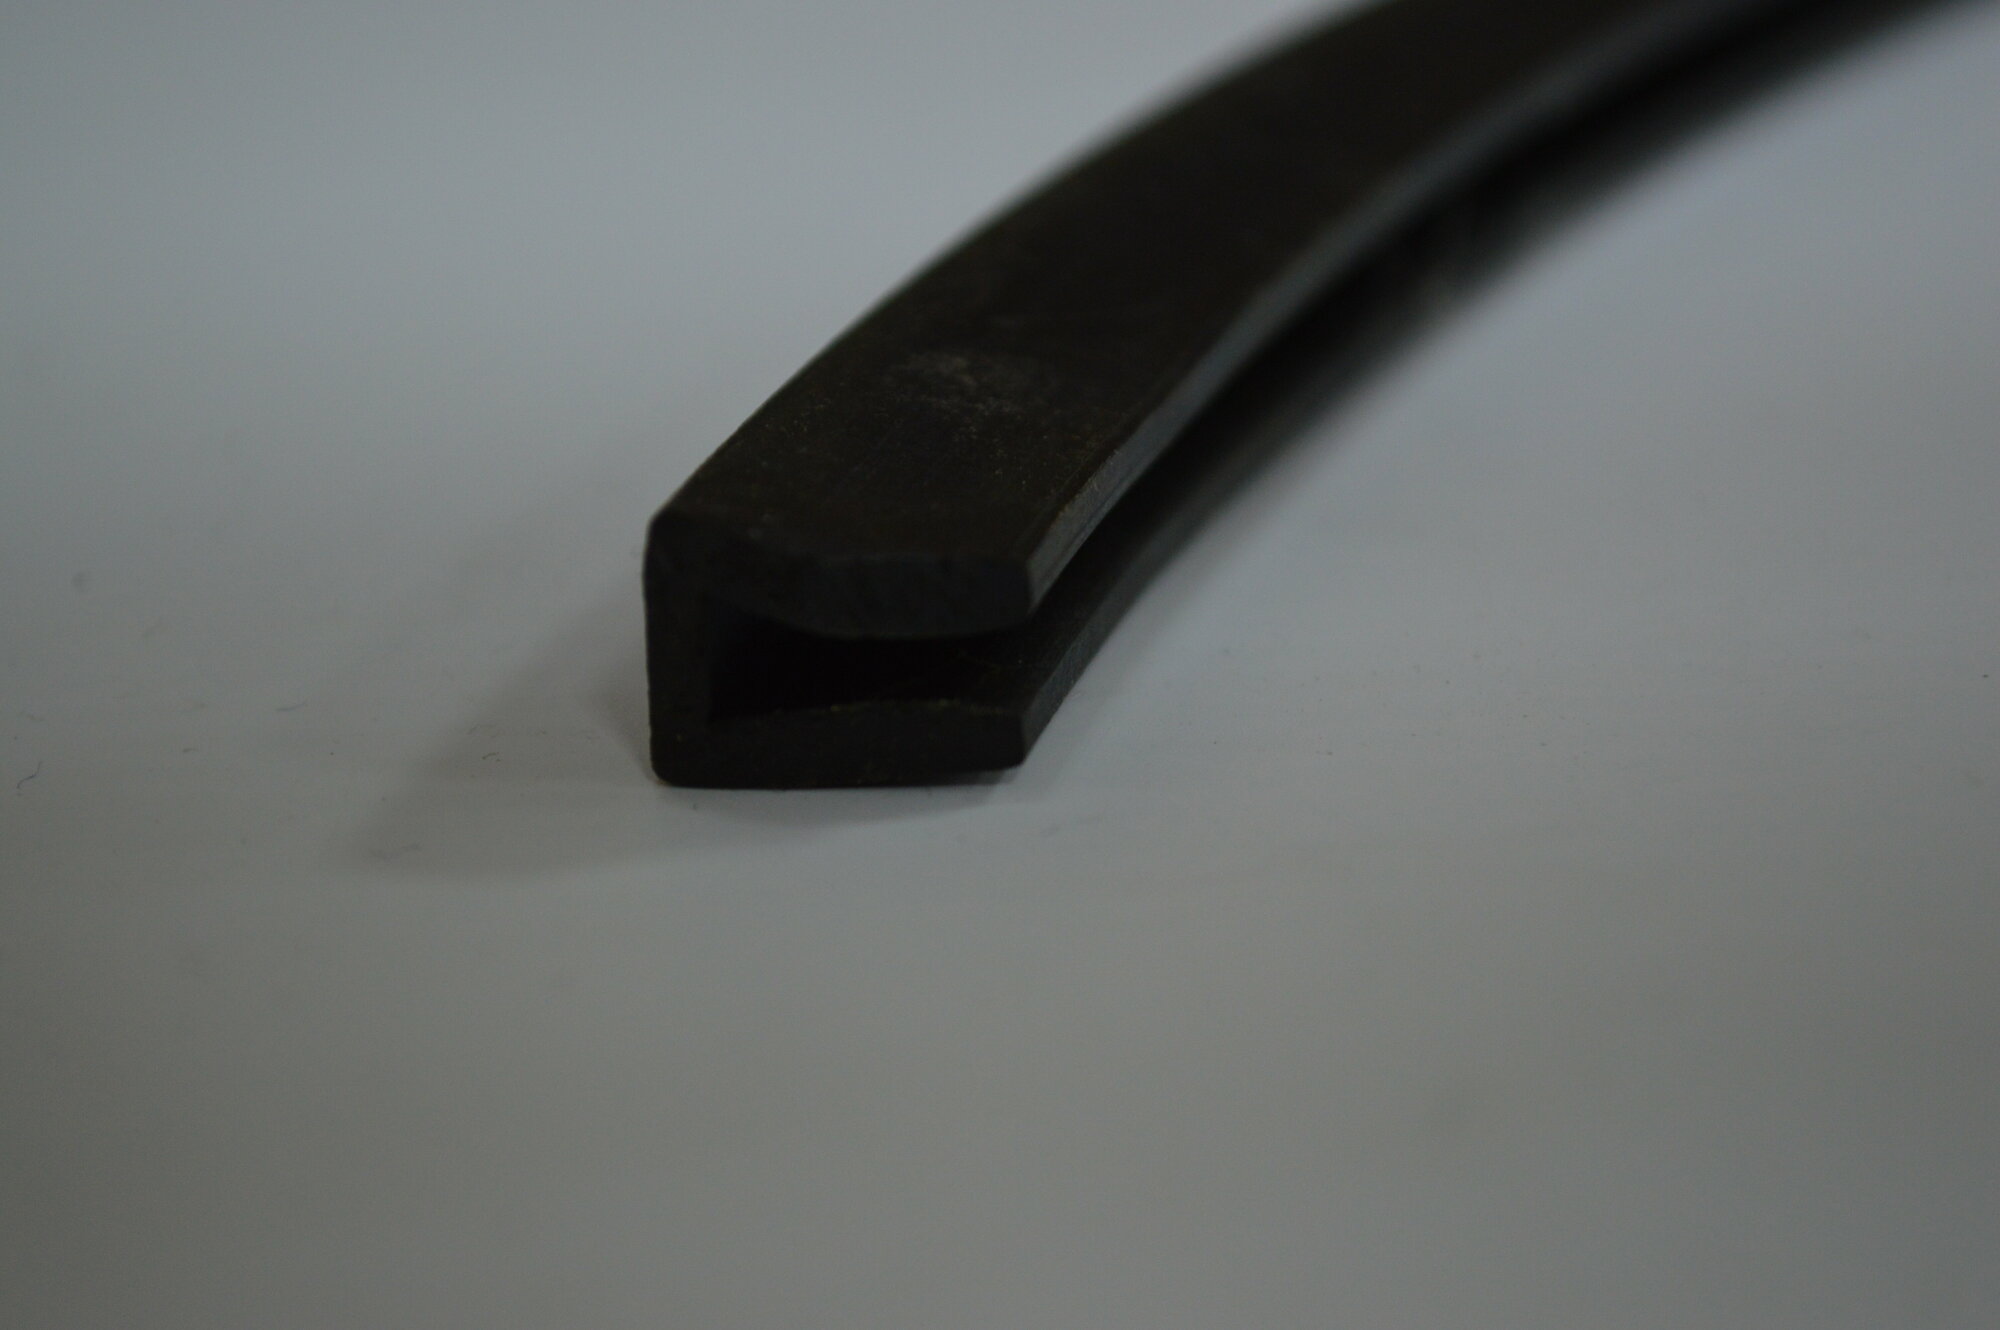 Профиль резиновый черный П-образный для уплотнения стекол и метала. Толщина стекла 12 мм. Длина 3 метра.